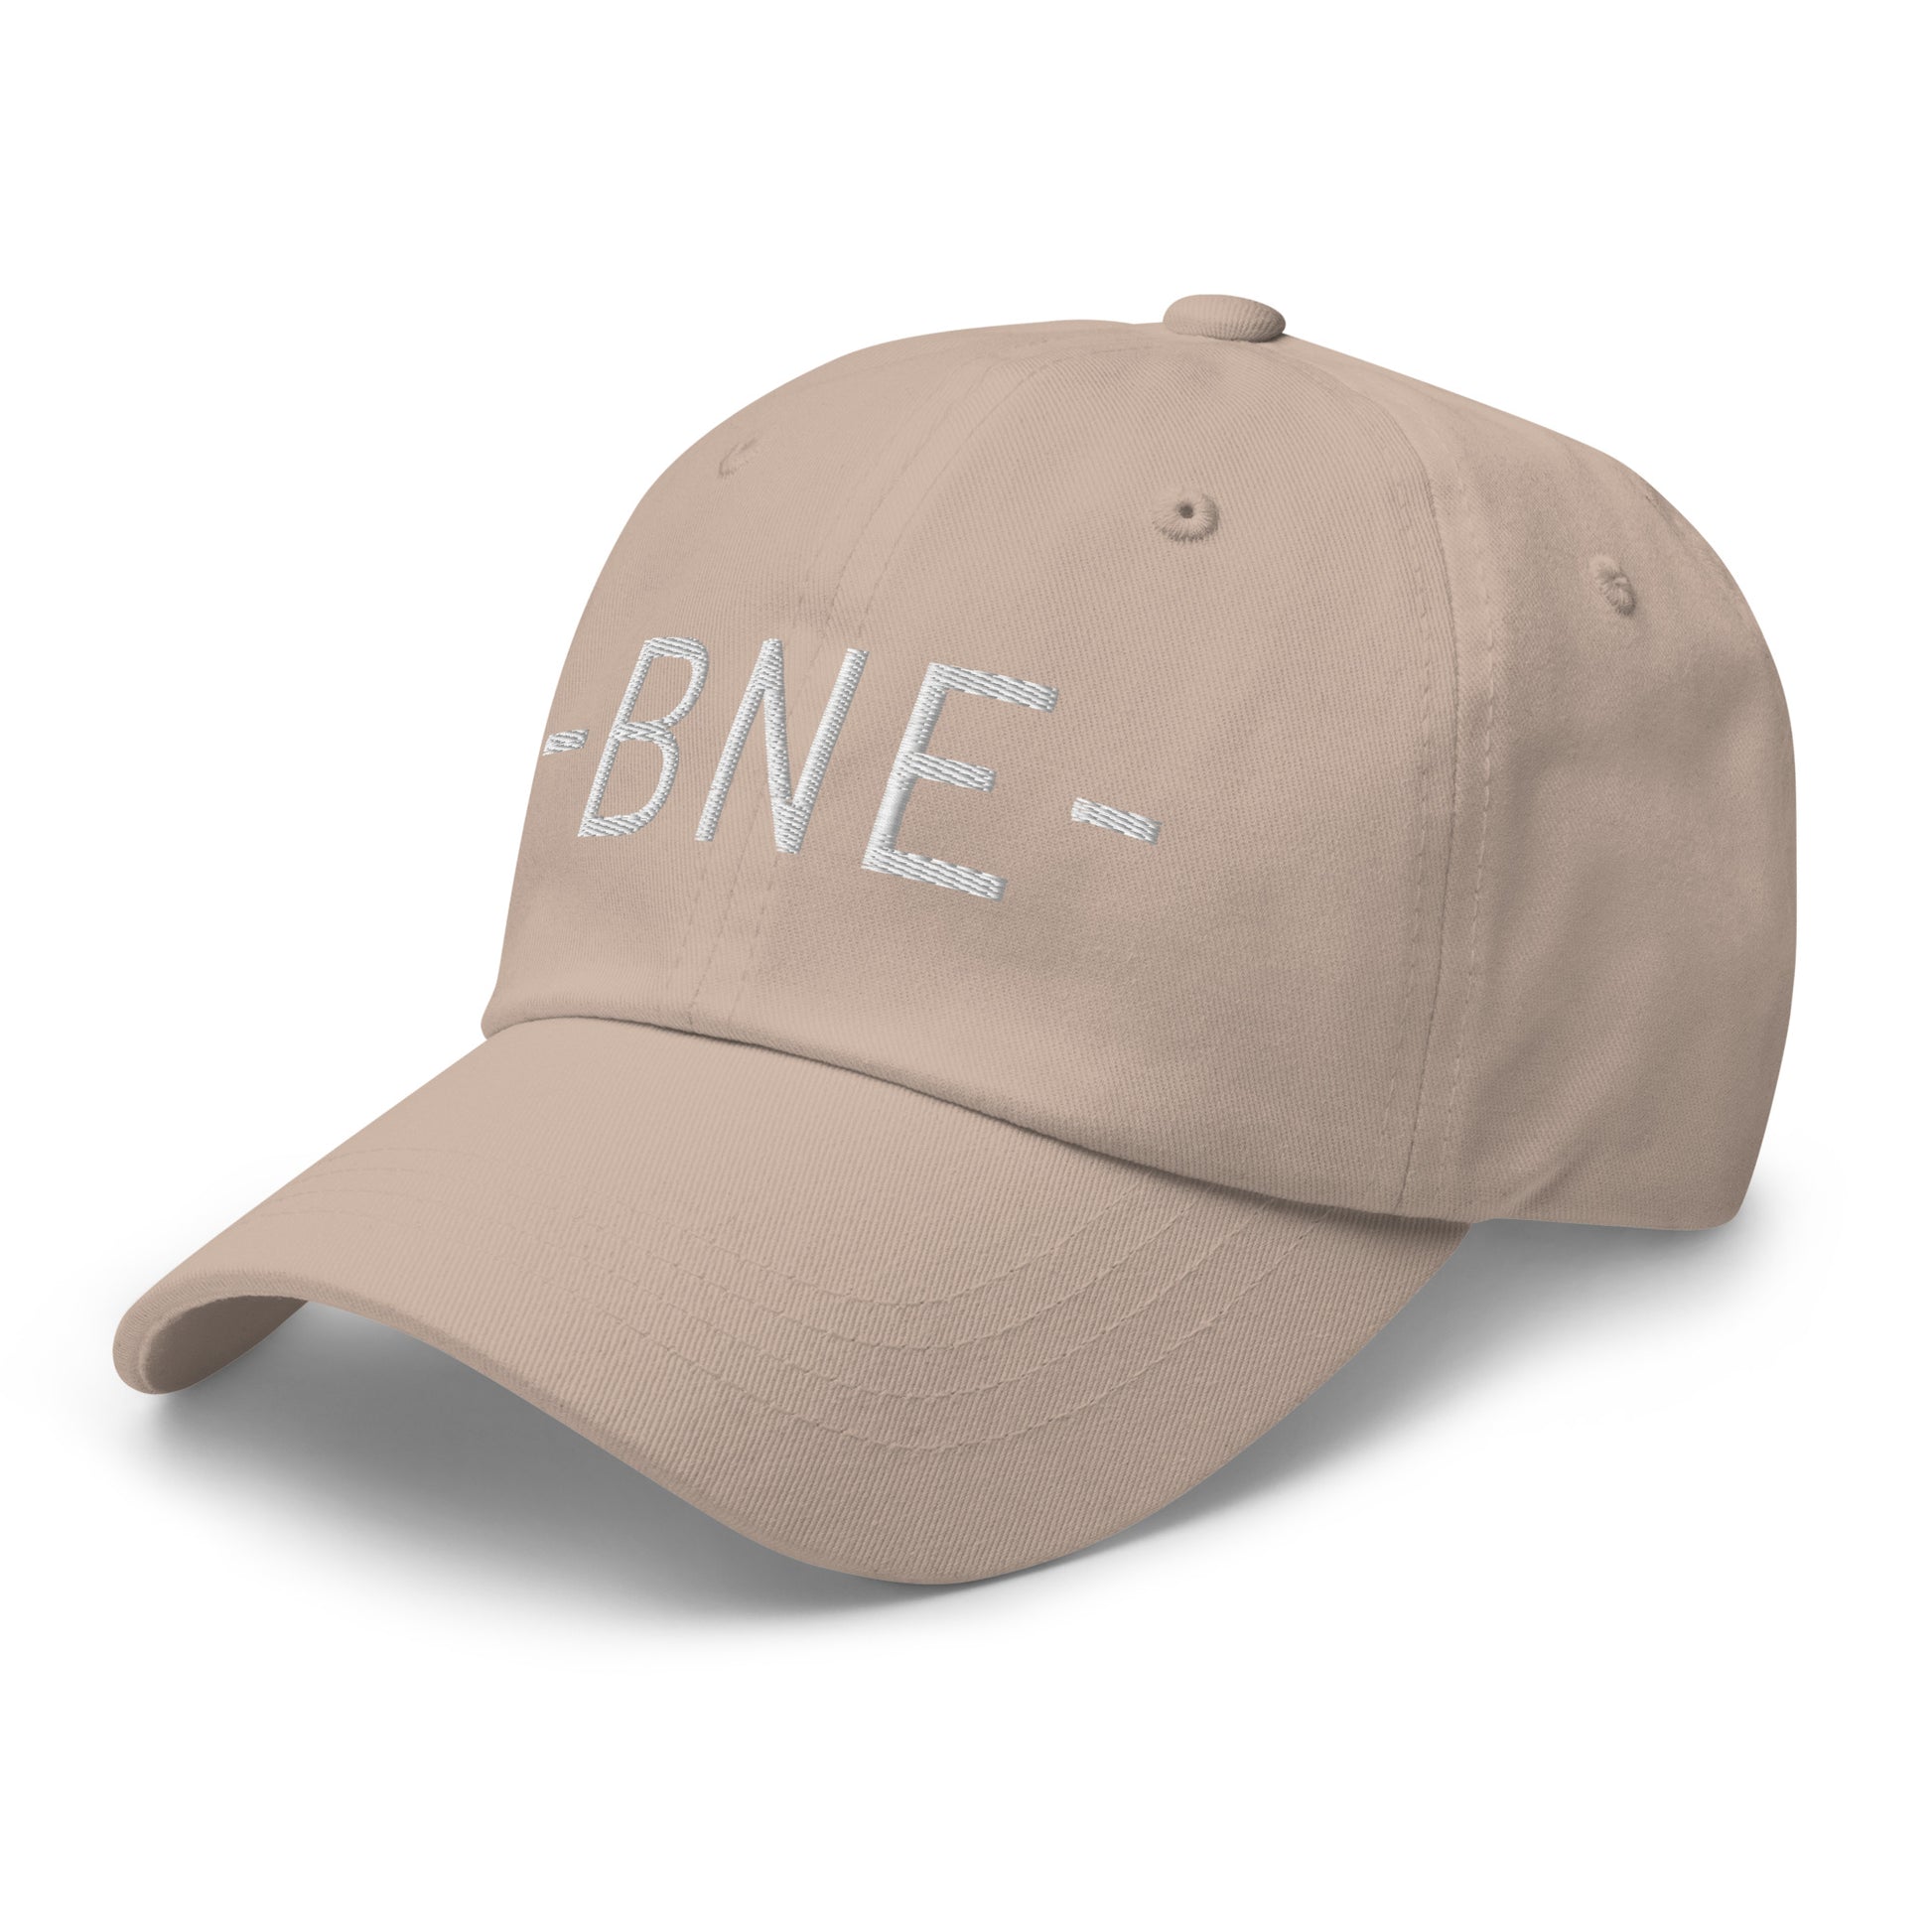 Souvenir Baseball Cap - White • BNE Brisbane • YHM Designs - Image 24